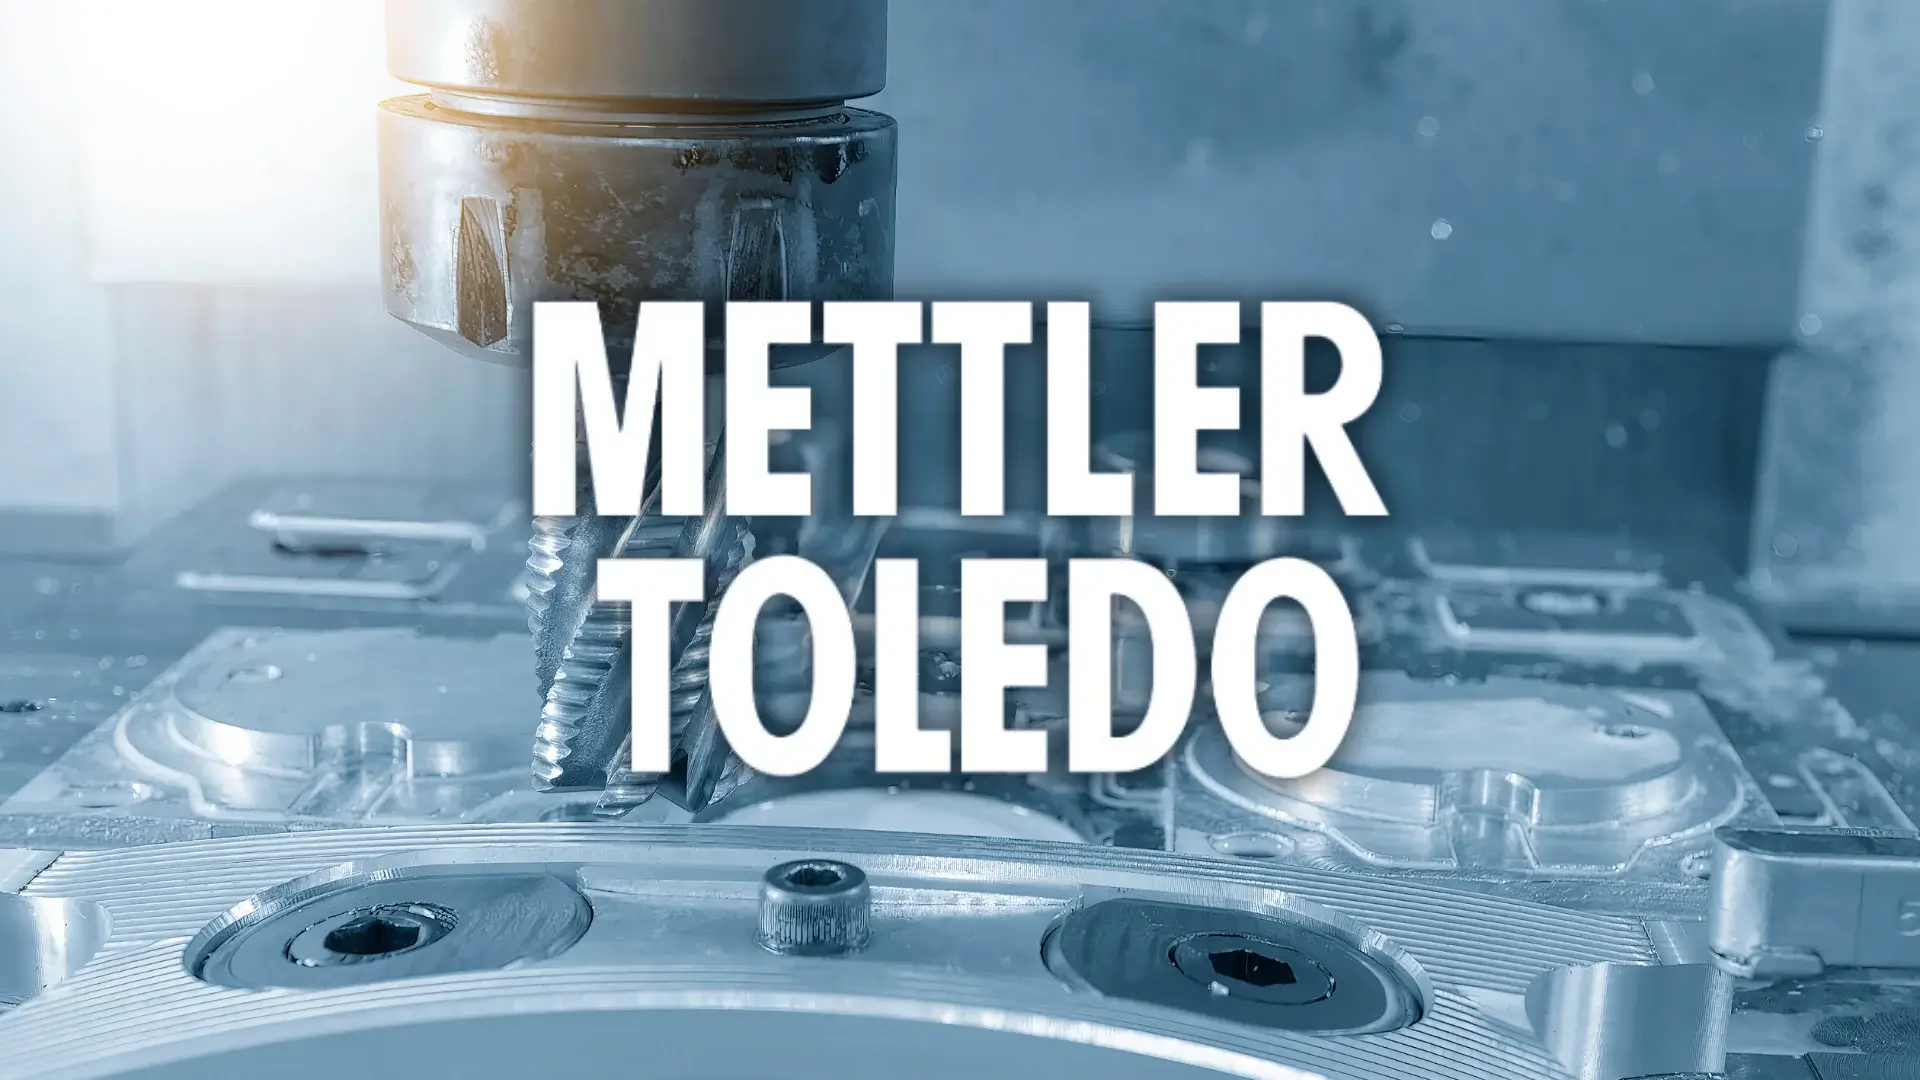 Mettler Toledo Aktie Analyse – Mit Präzision zu neuen Allzeithochs?